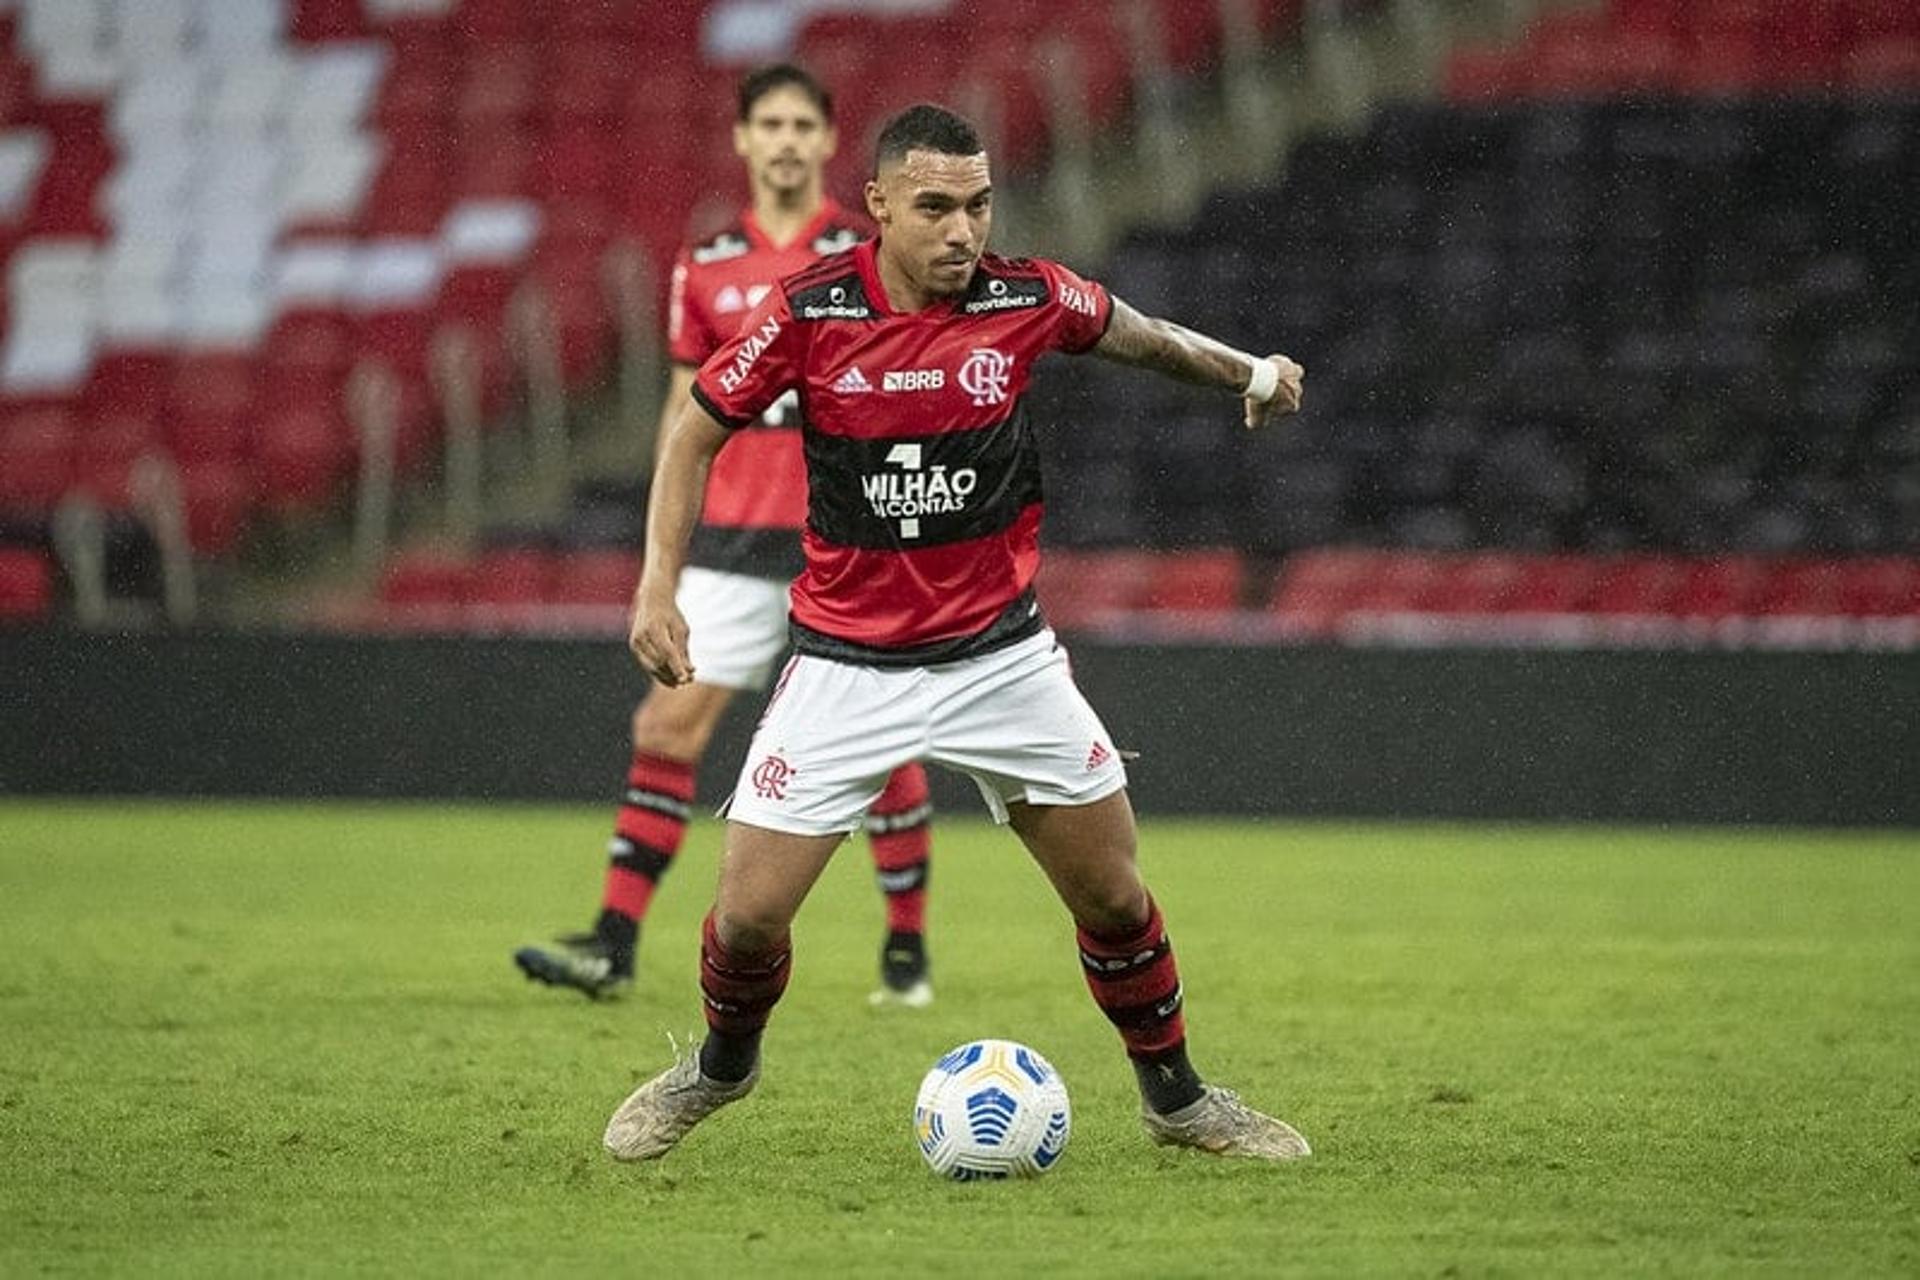 Matheuzinho - Flamengo x Coritiba